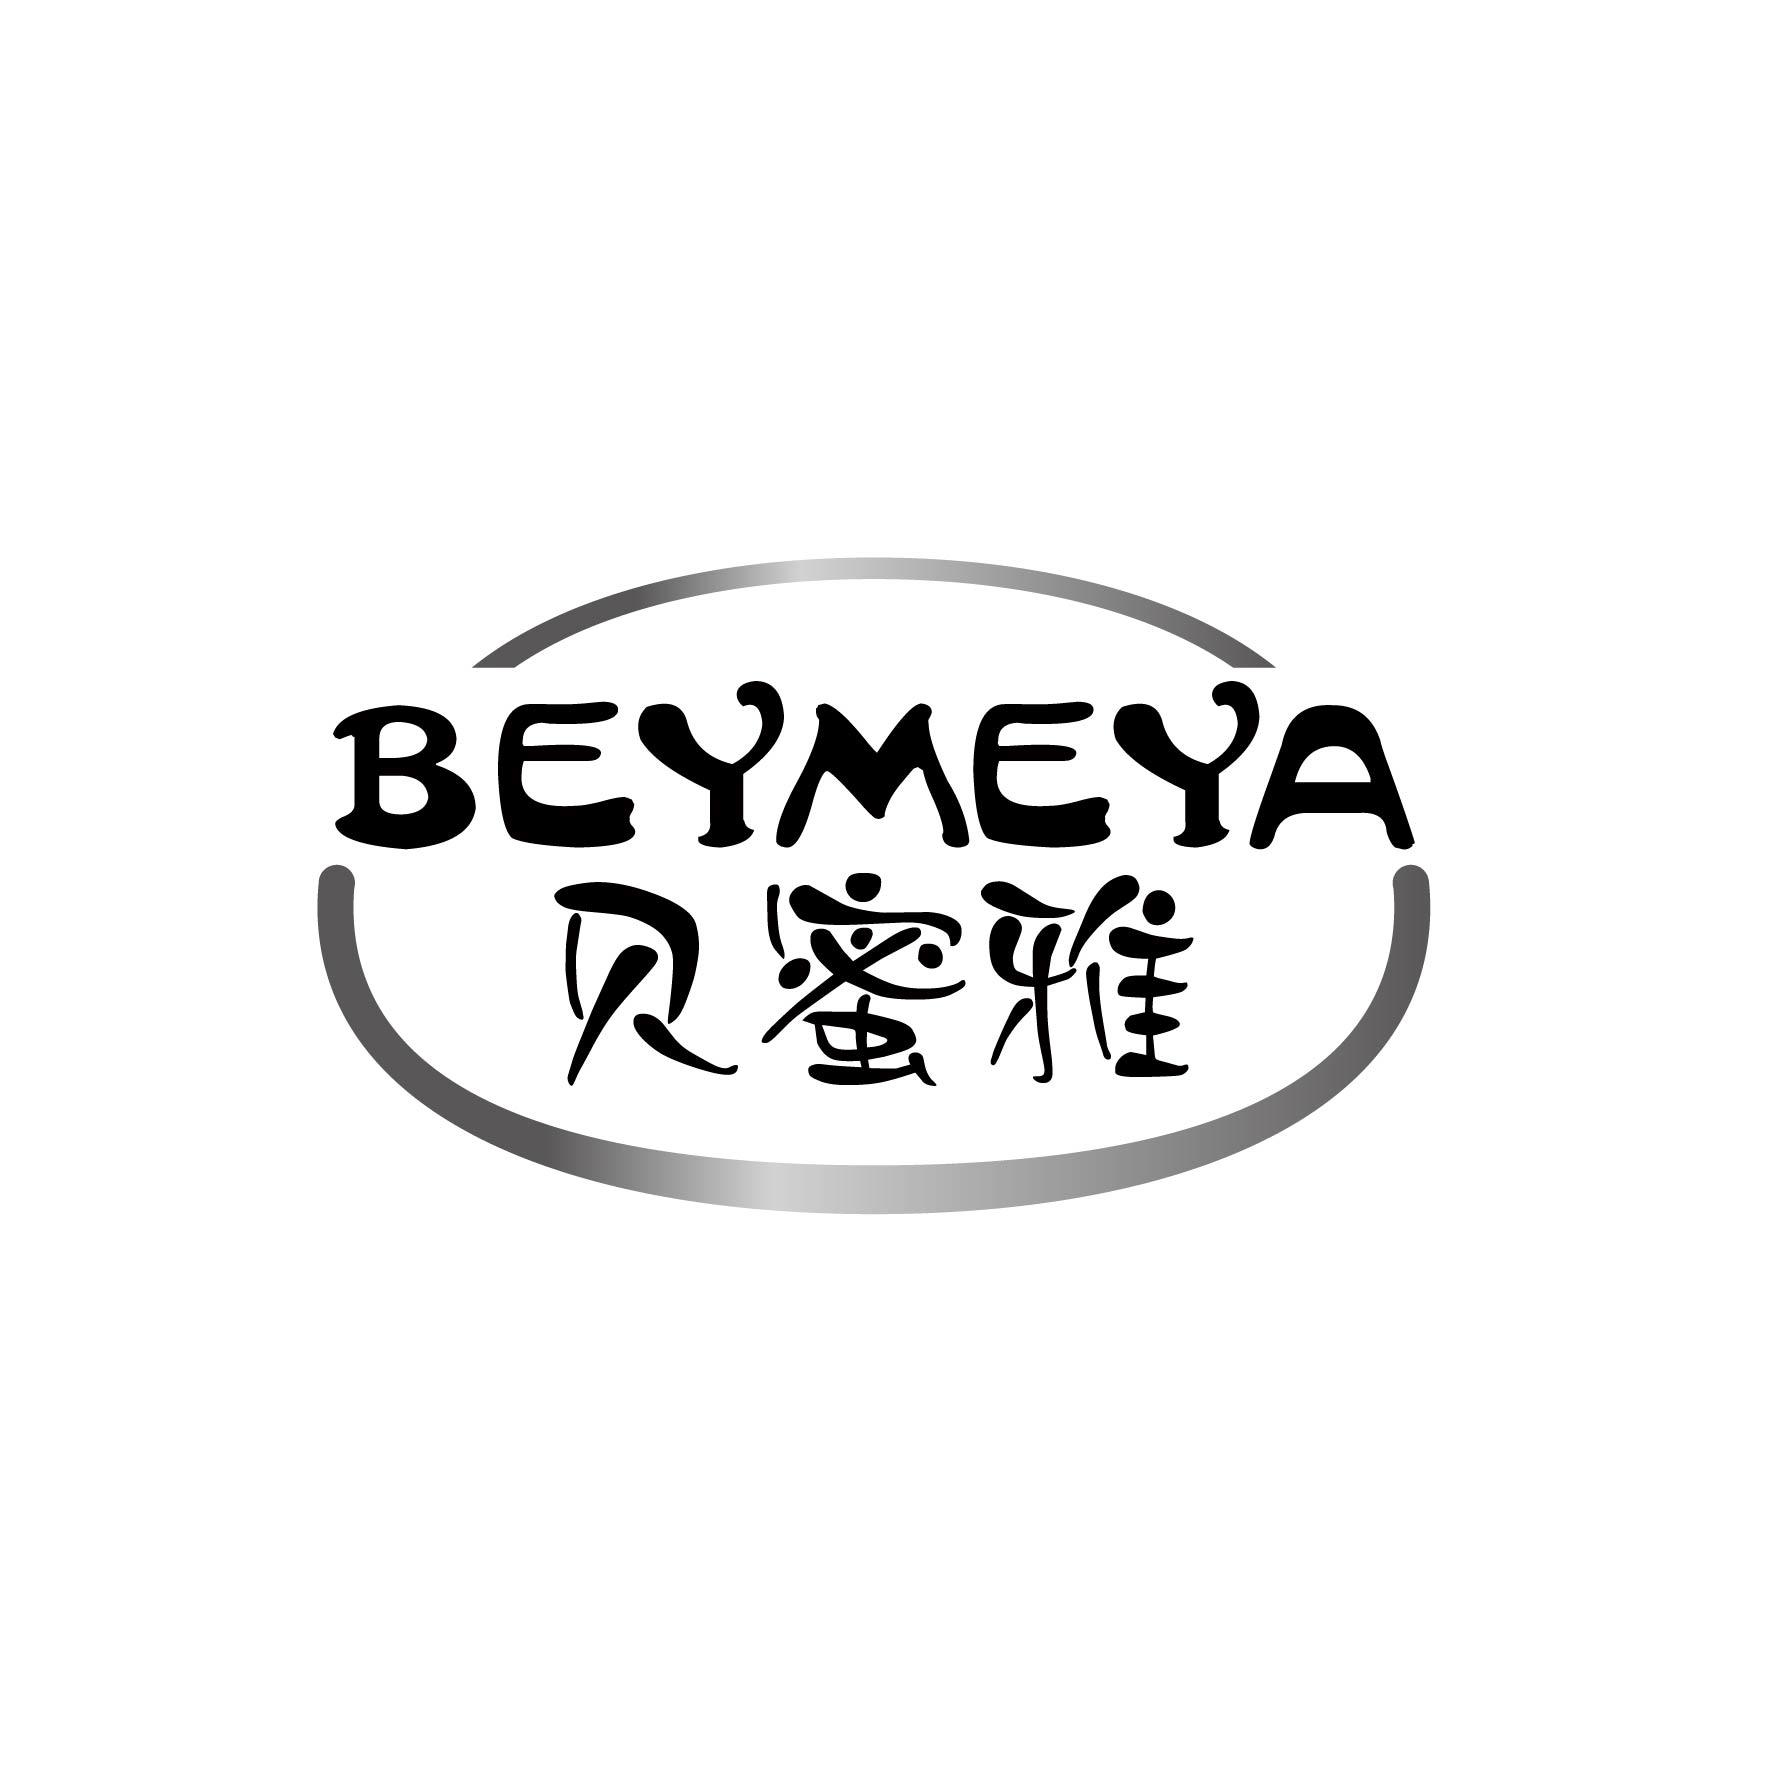 贝蜜雅 BEYMEYA商标图片